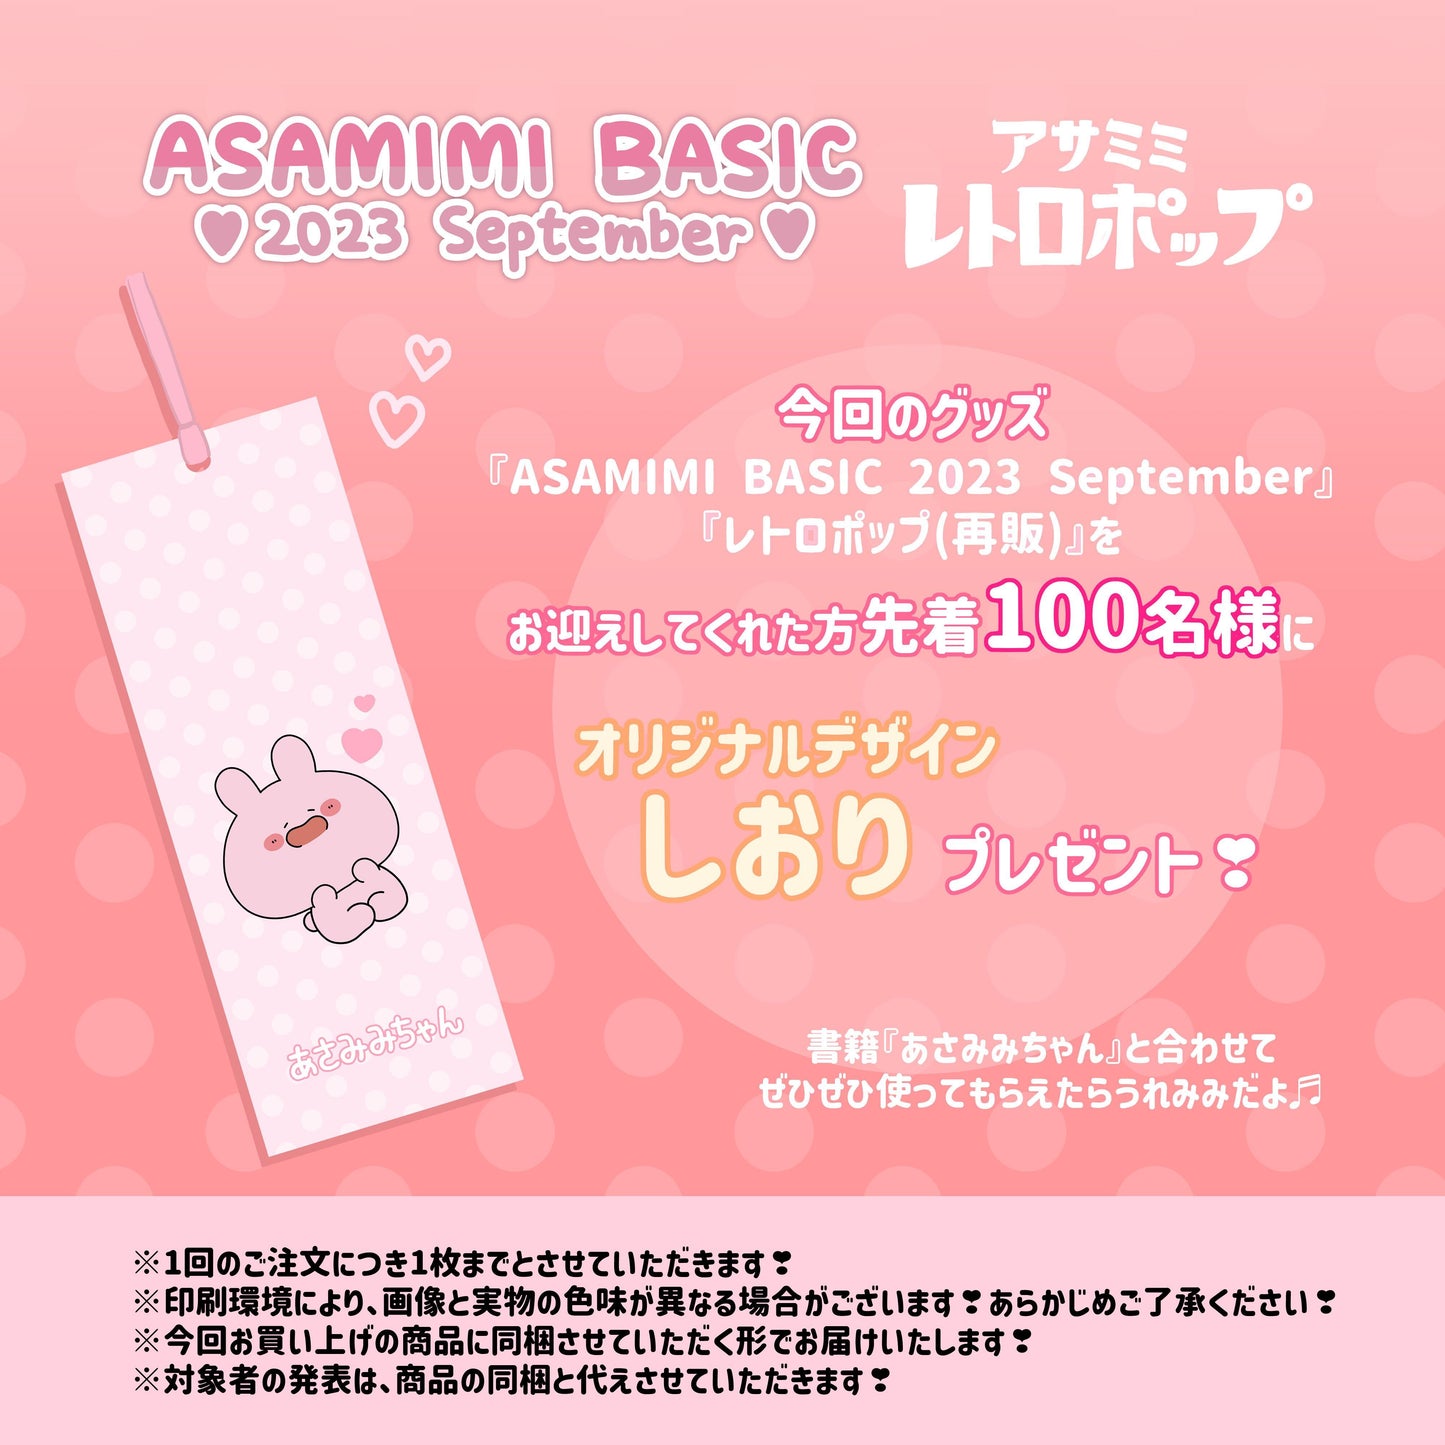 [Asamimi-chan] Acrylic coaster (retro) [shipped in mid-November]